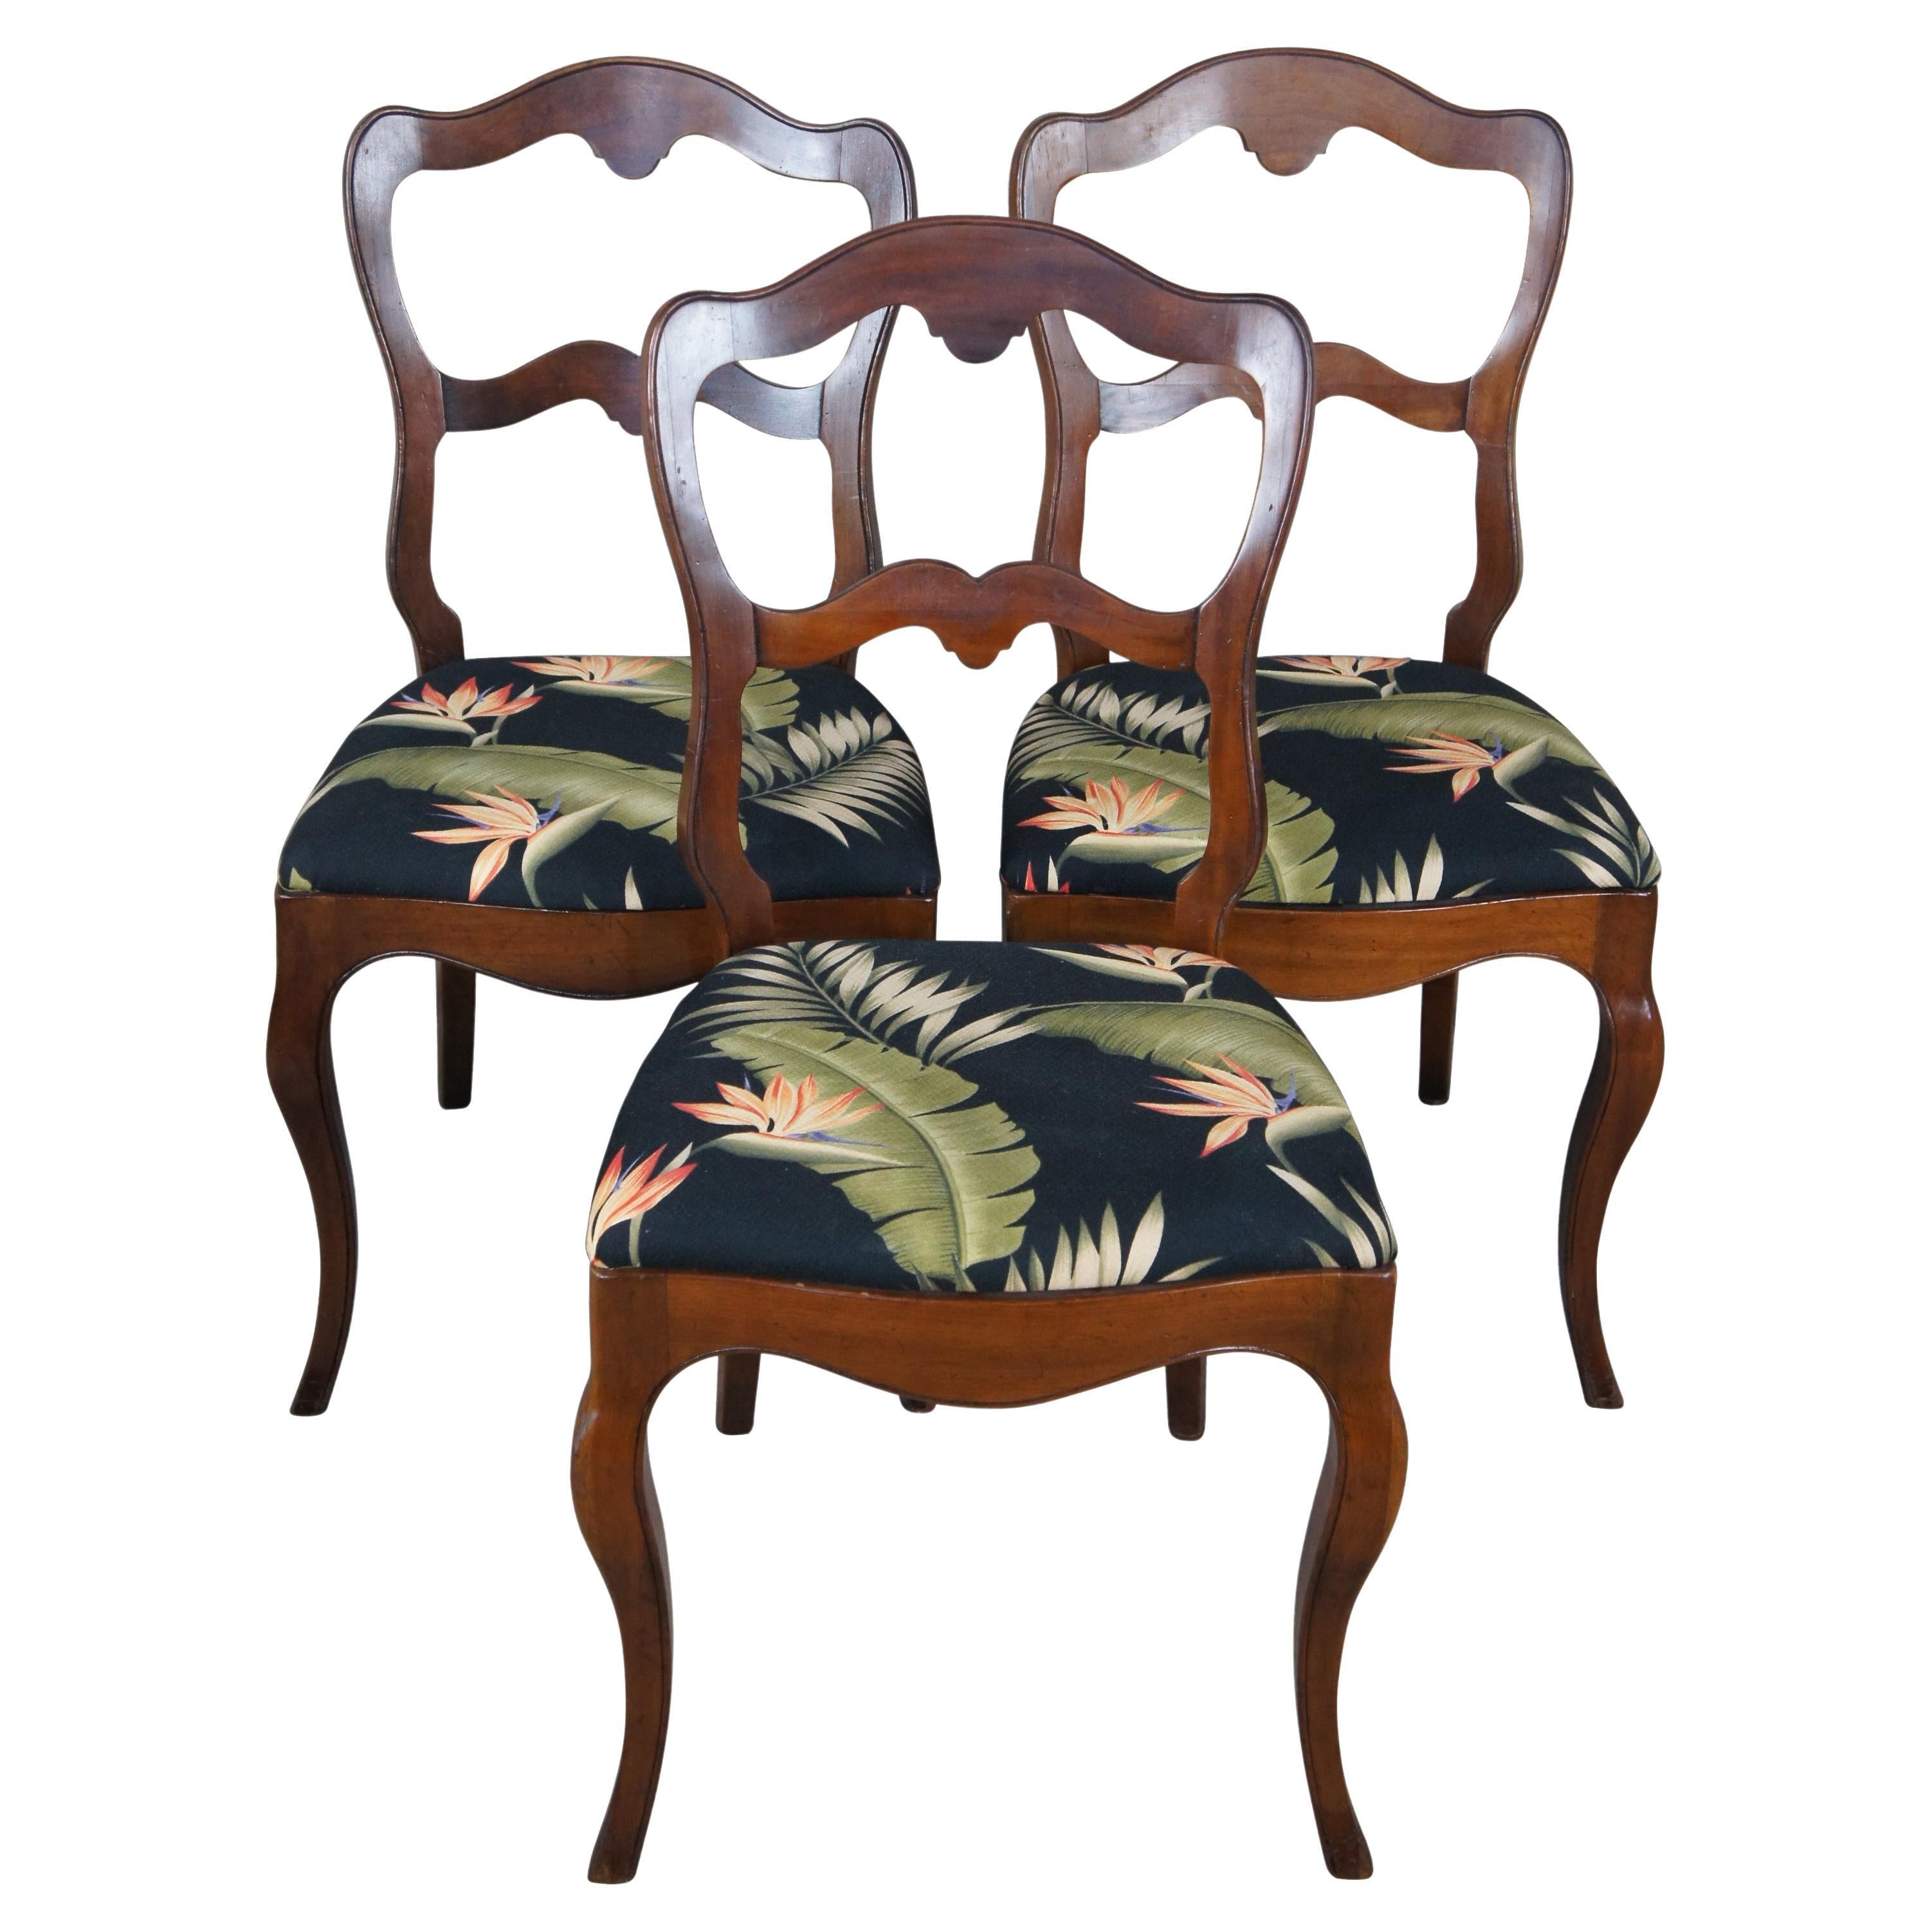 3 chaises d'appoint françaises anciennes de style victorien en noyer rembourrées pour salle à manger ou salon